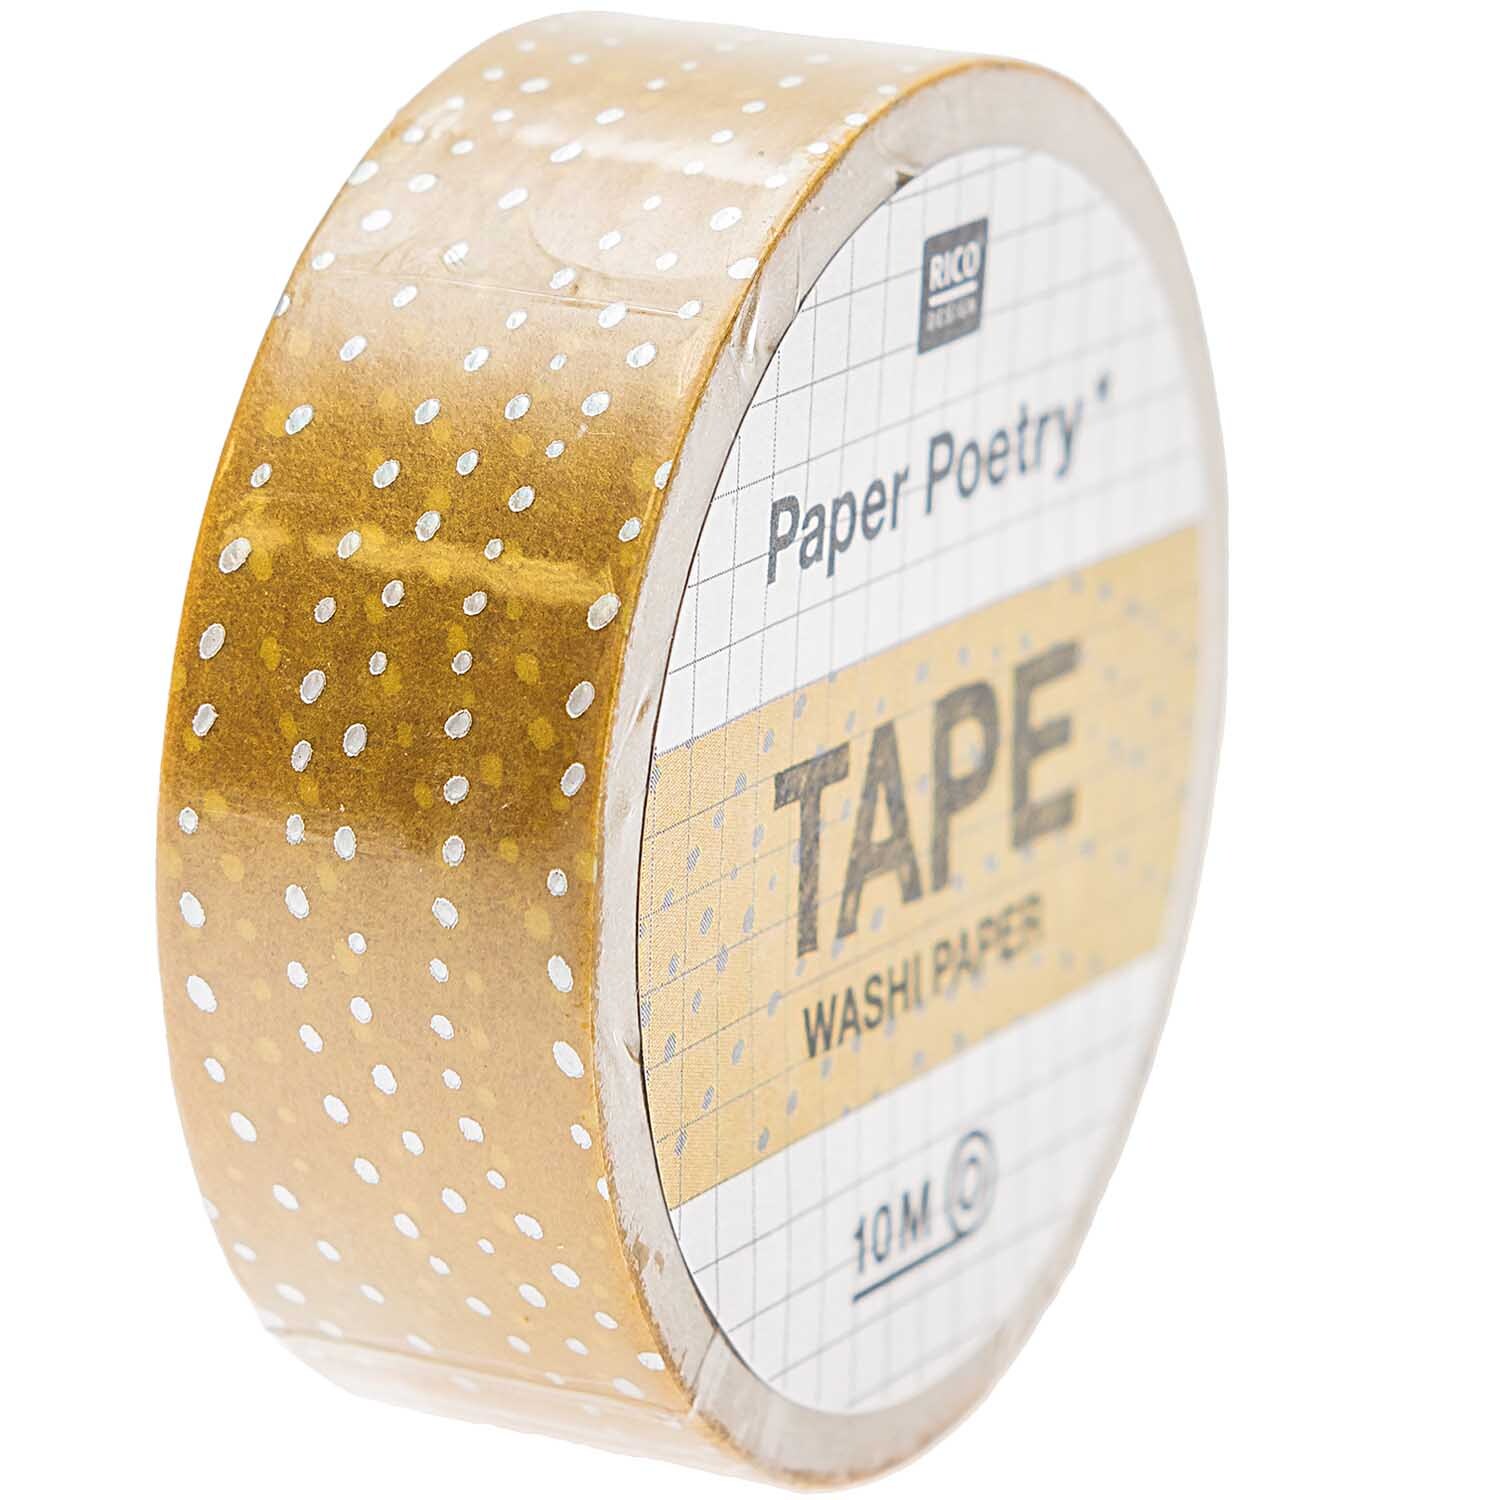 Paper Poetry Tape Mermaid Wellen senf 1,5cm 10m